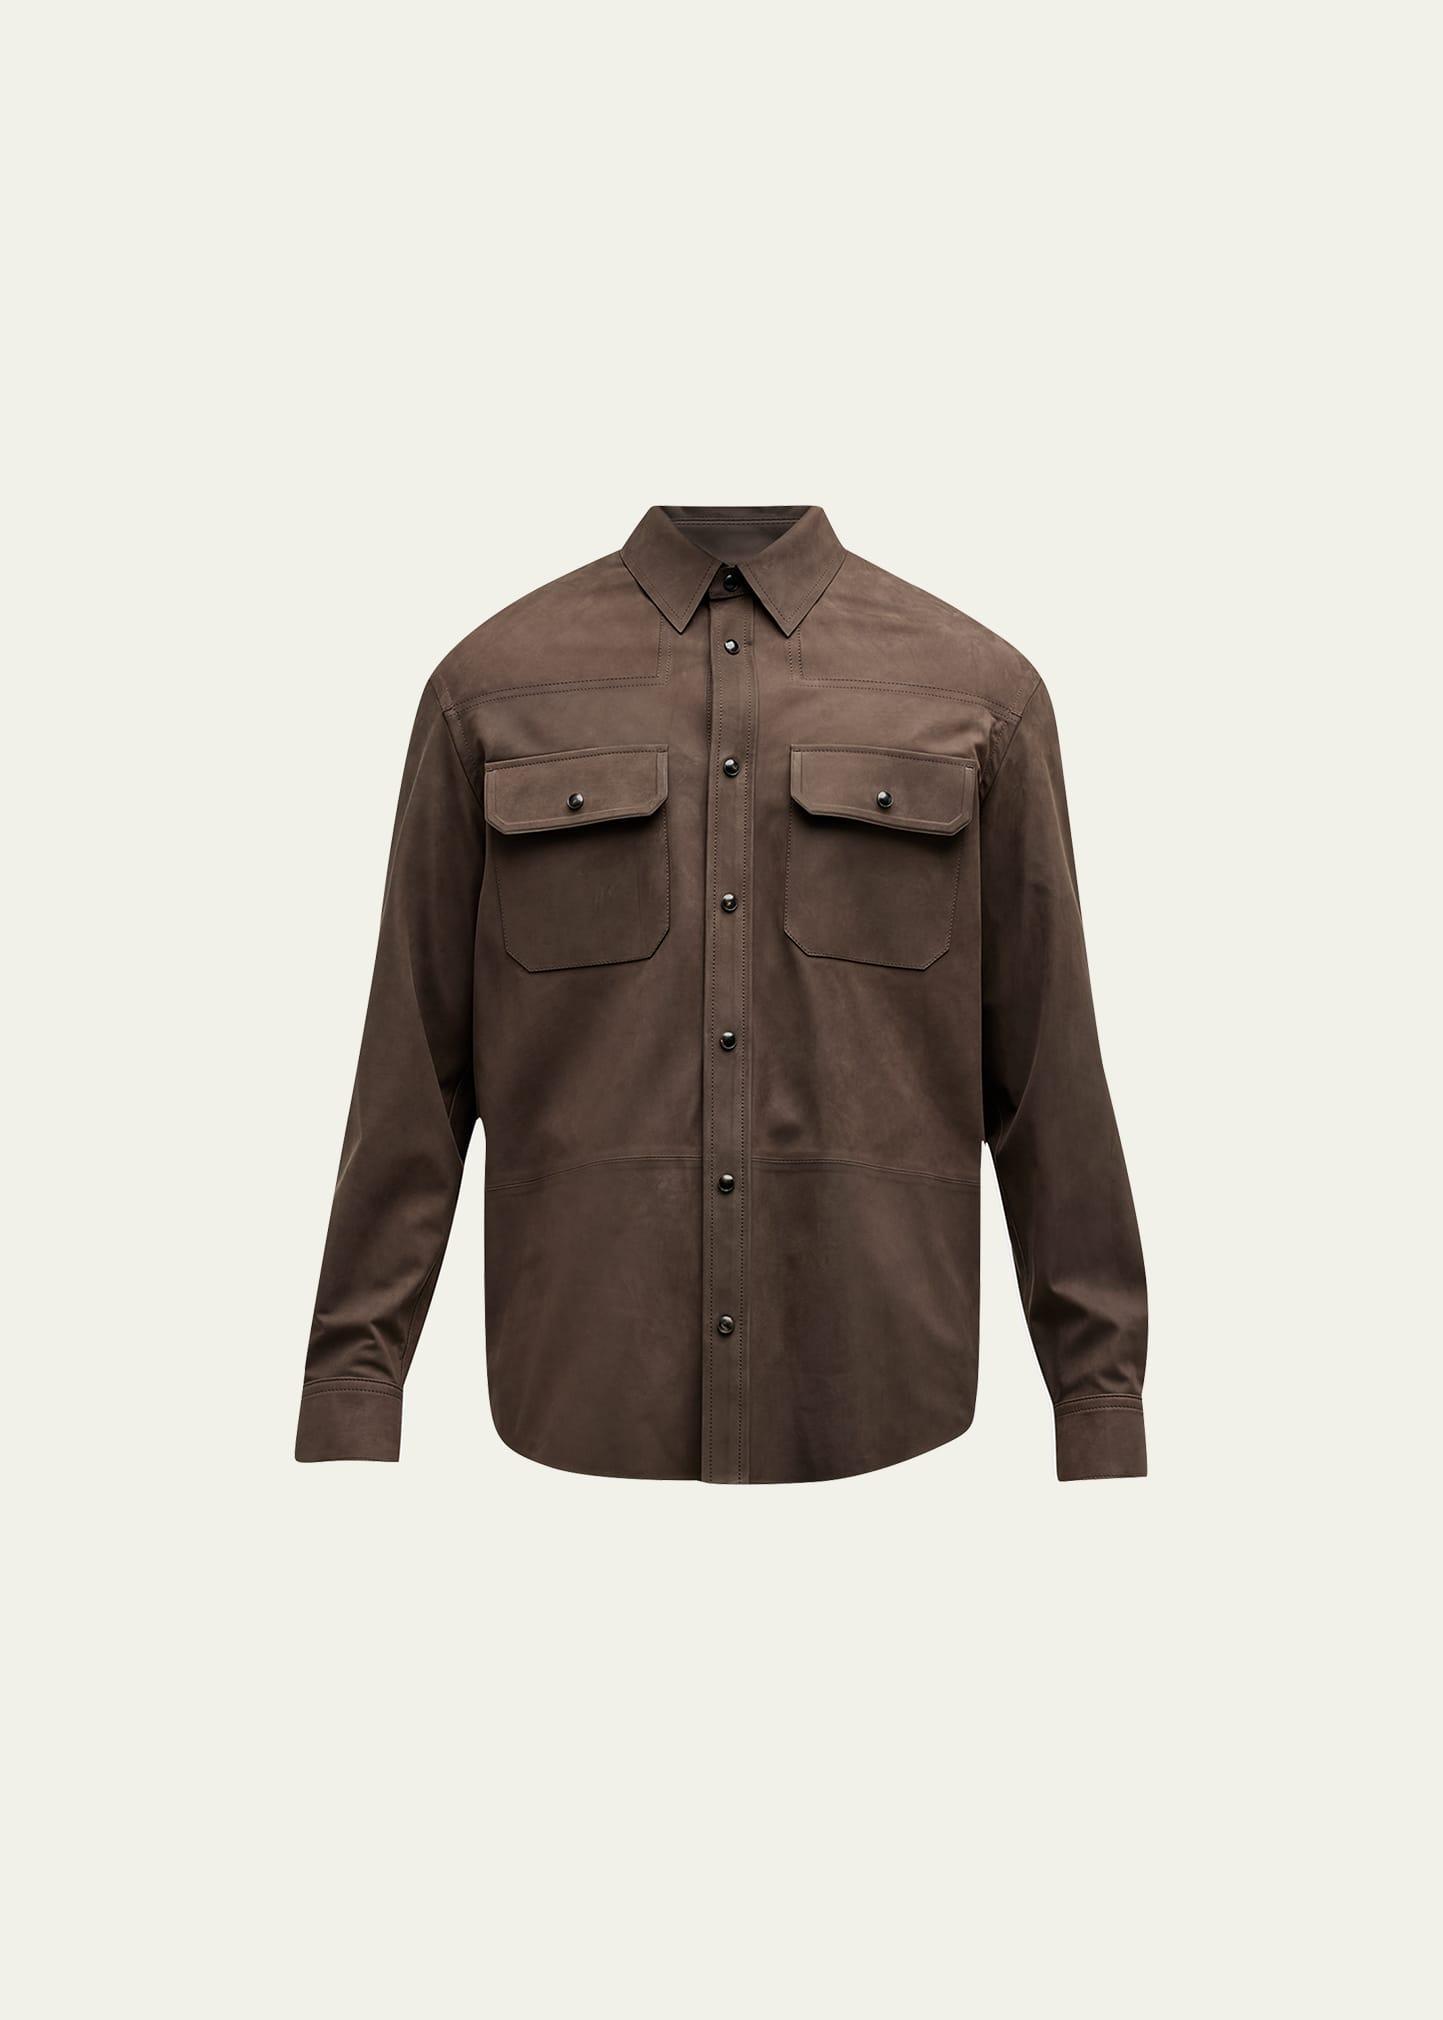 Mens Nubuck Leather Overshirt Product Image